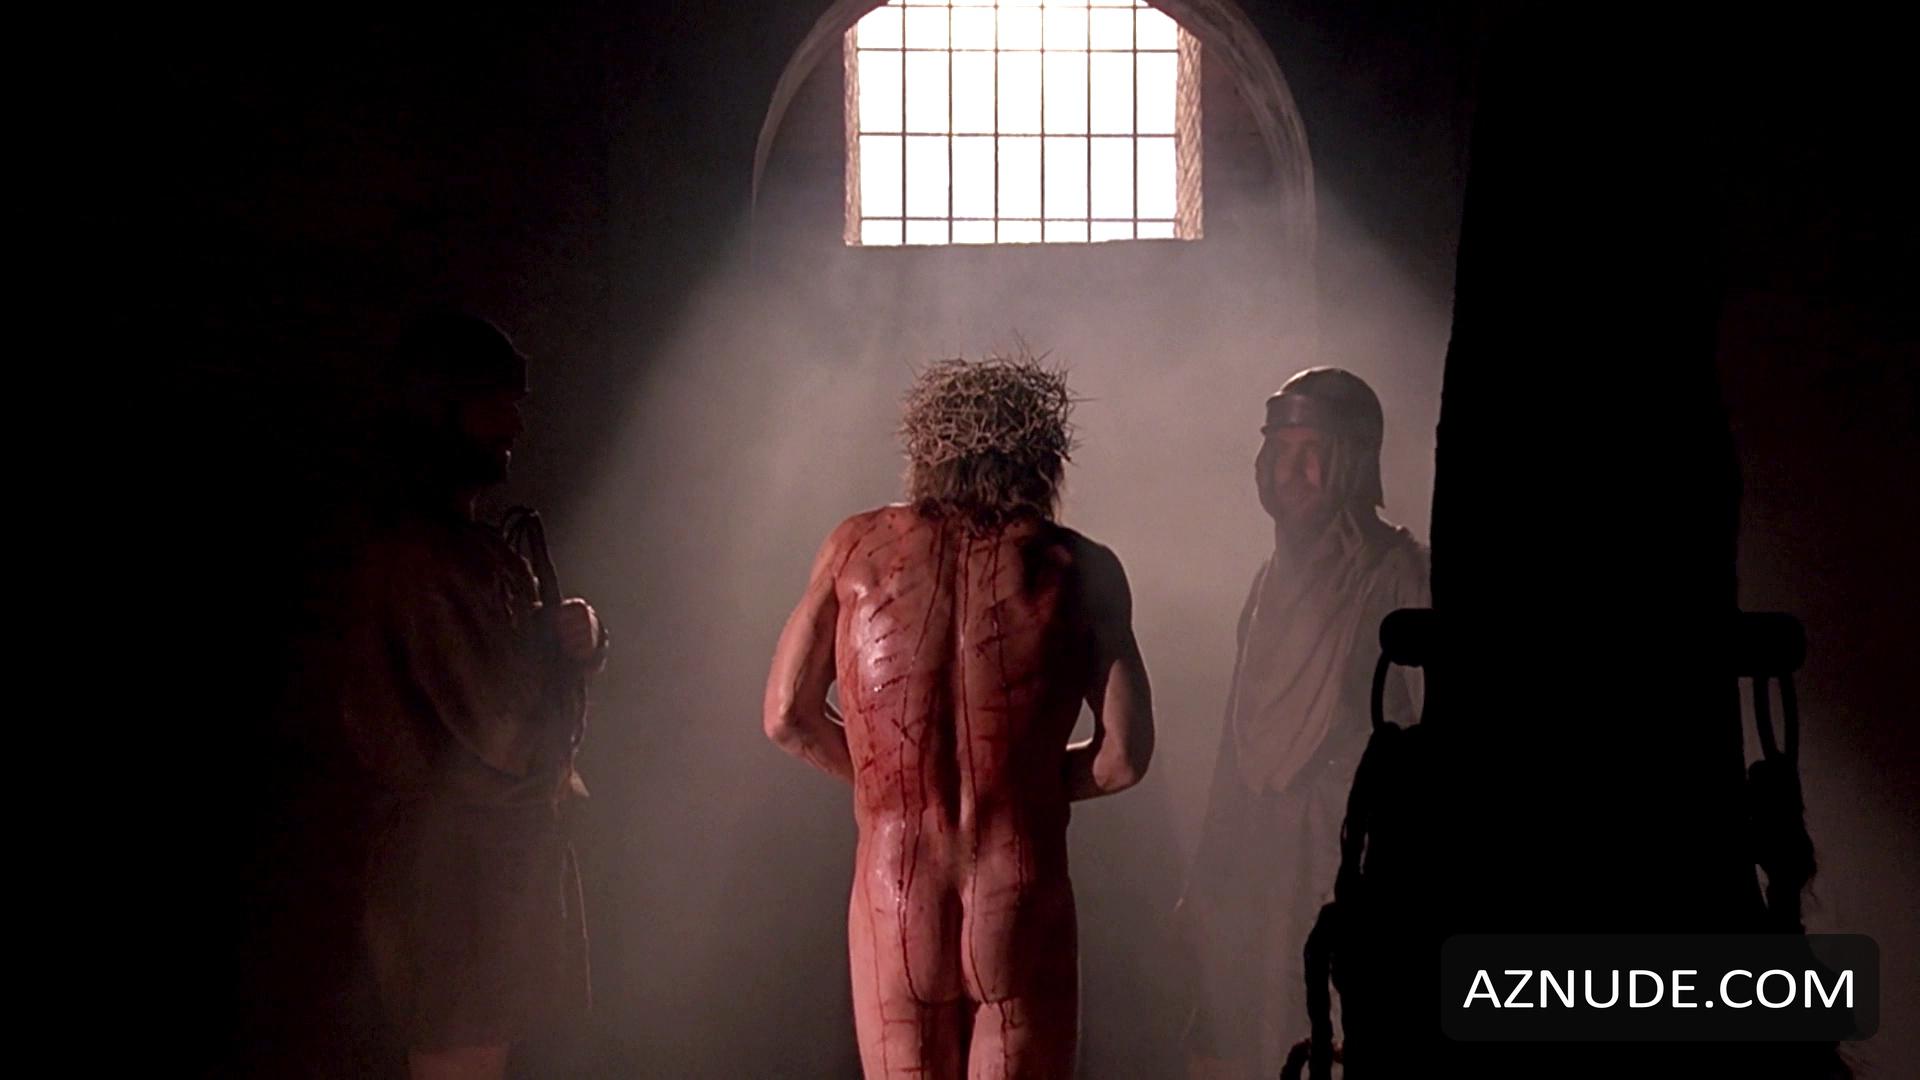 The Last Temptation Of Christ Nude Scenes Aznude Men 